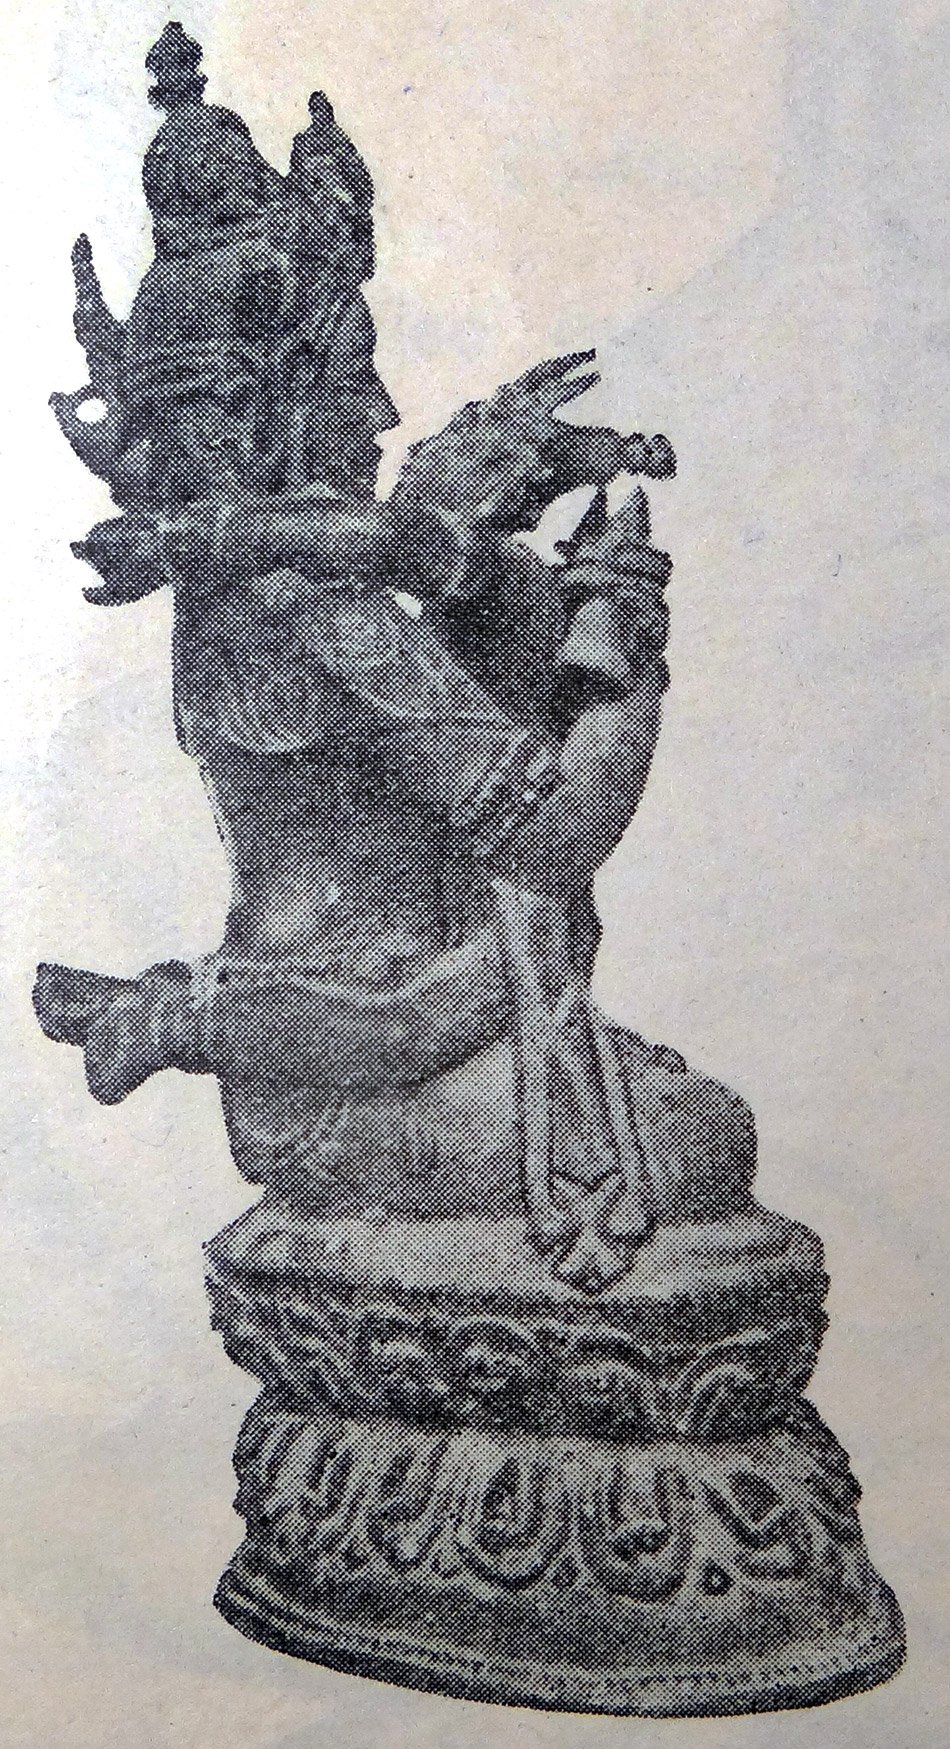 Vajradhara Yab-yum